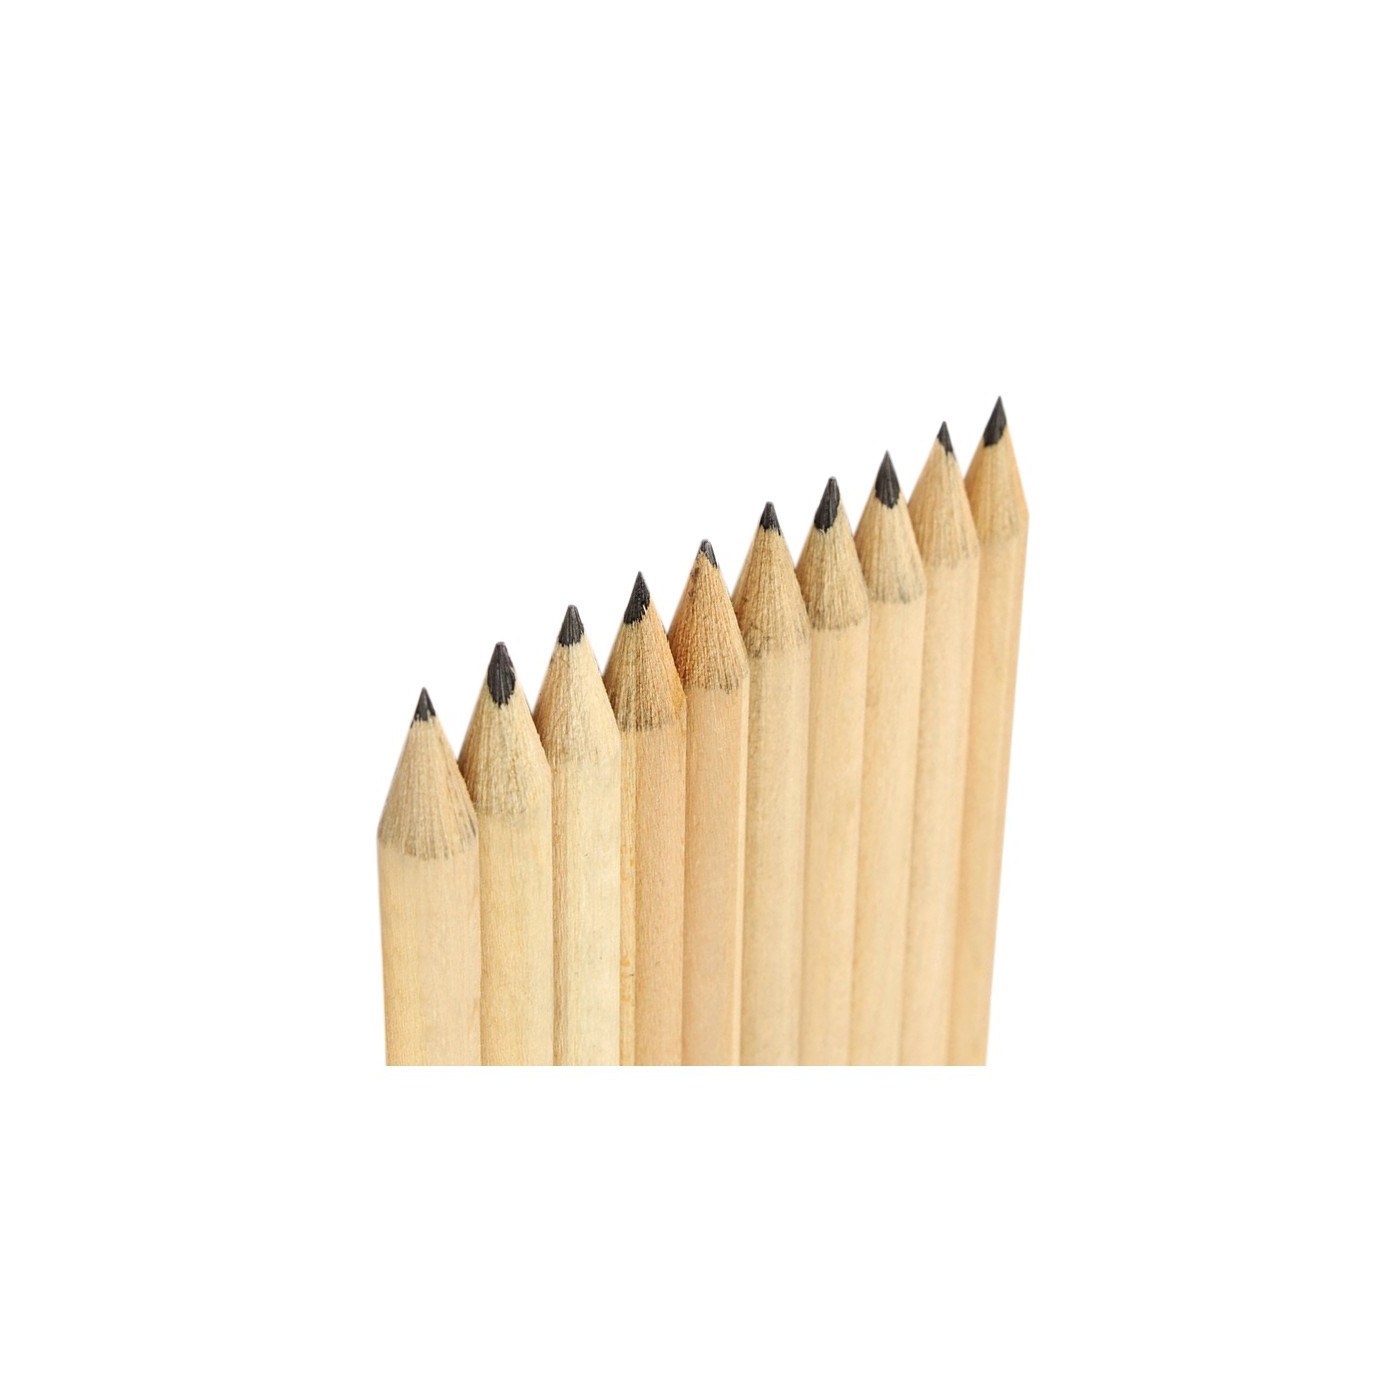 Sæt med 50 blyanter (19 cm længde, type 4, med viskelæder)